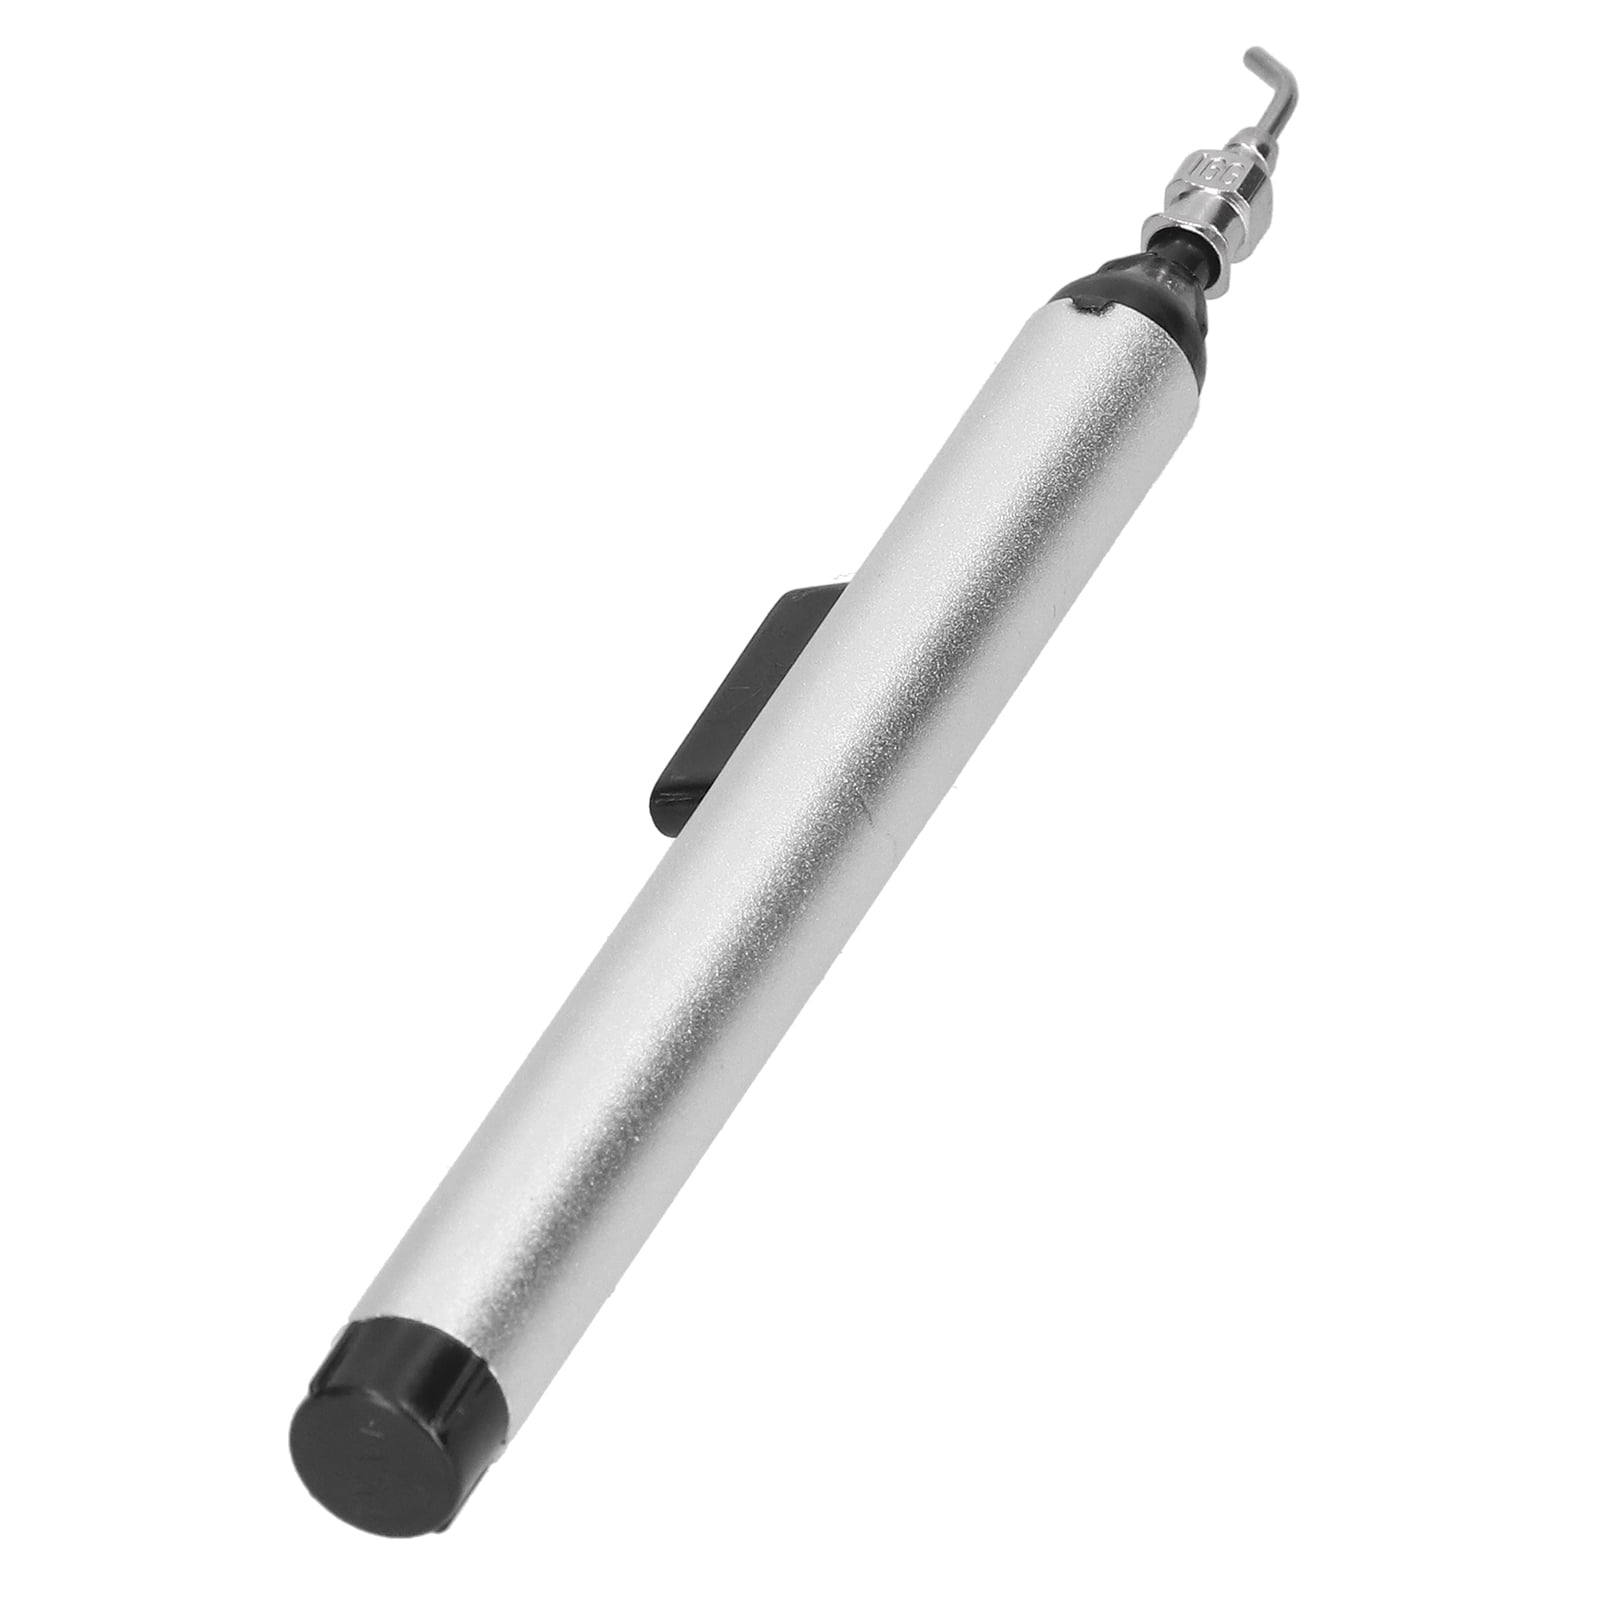 TU-939 Aluminum Vacuum Sucking Pen Sucker Pick Up Hand Tool With 3Pcs Sucker 